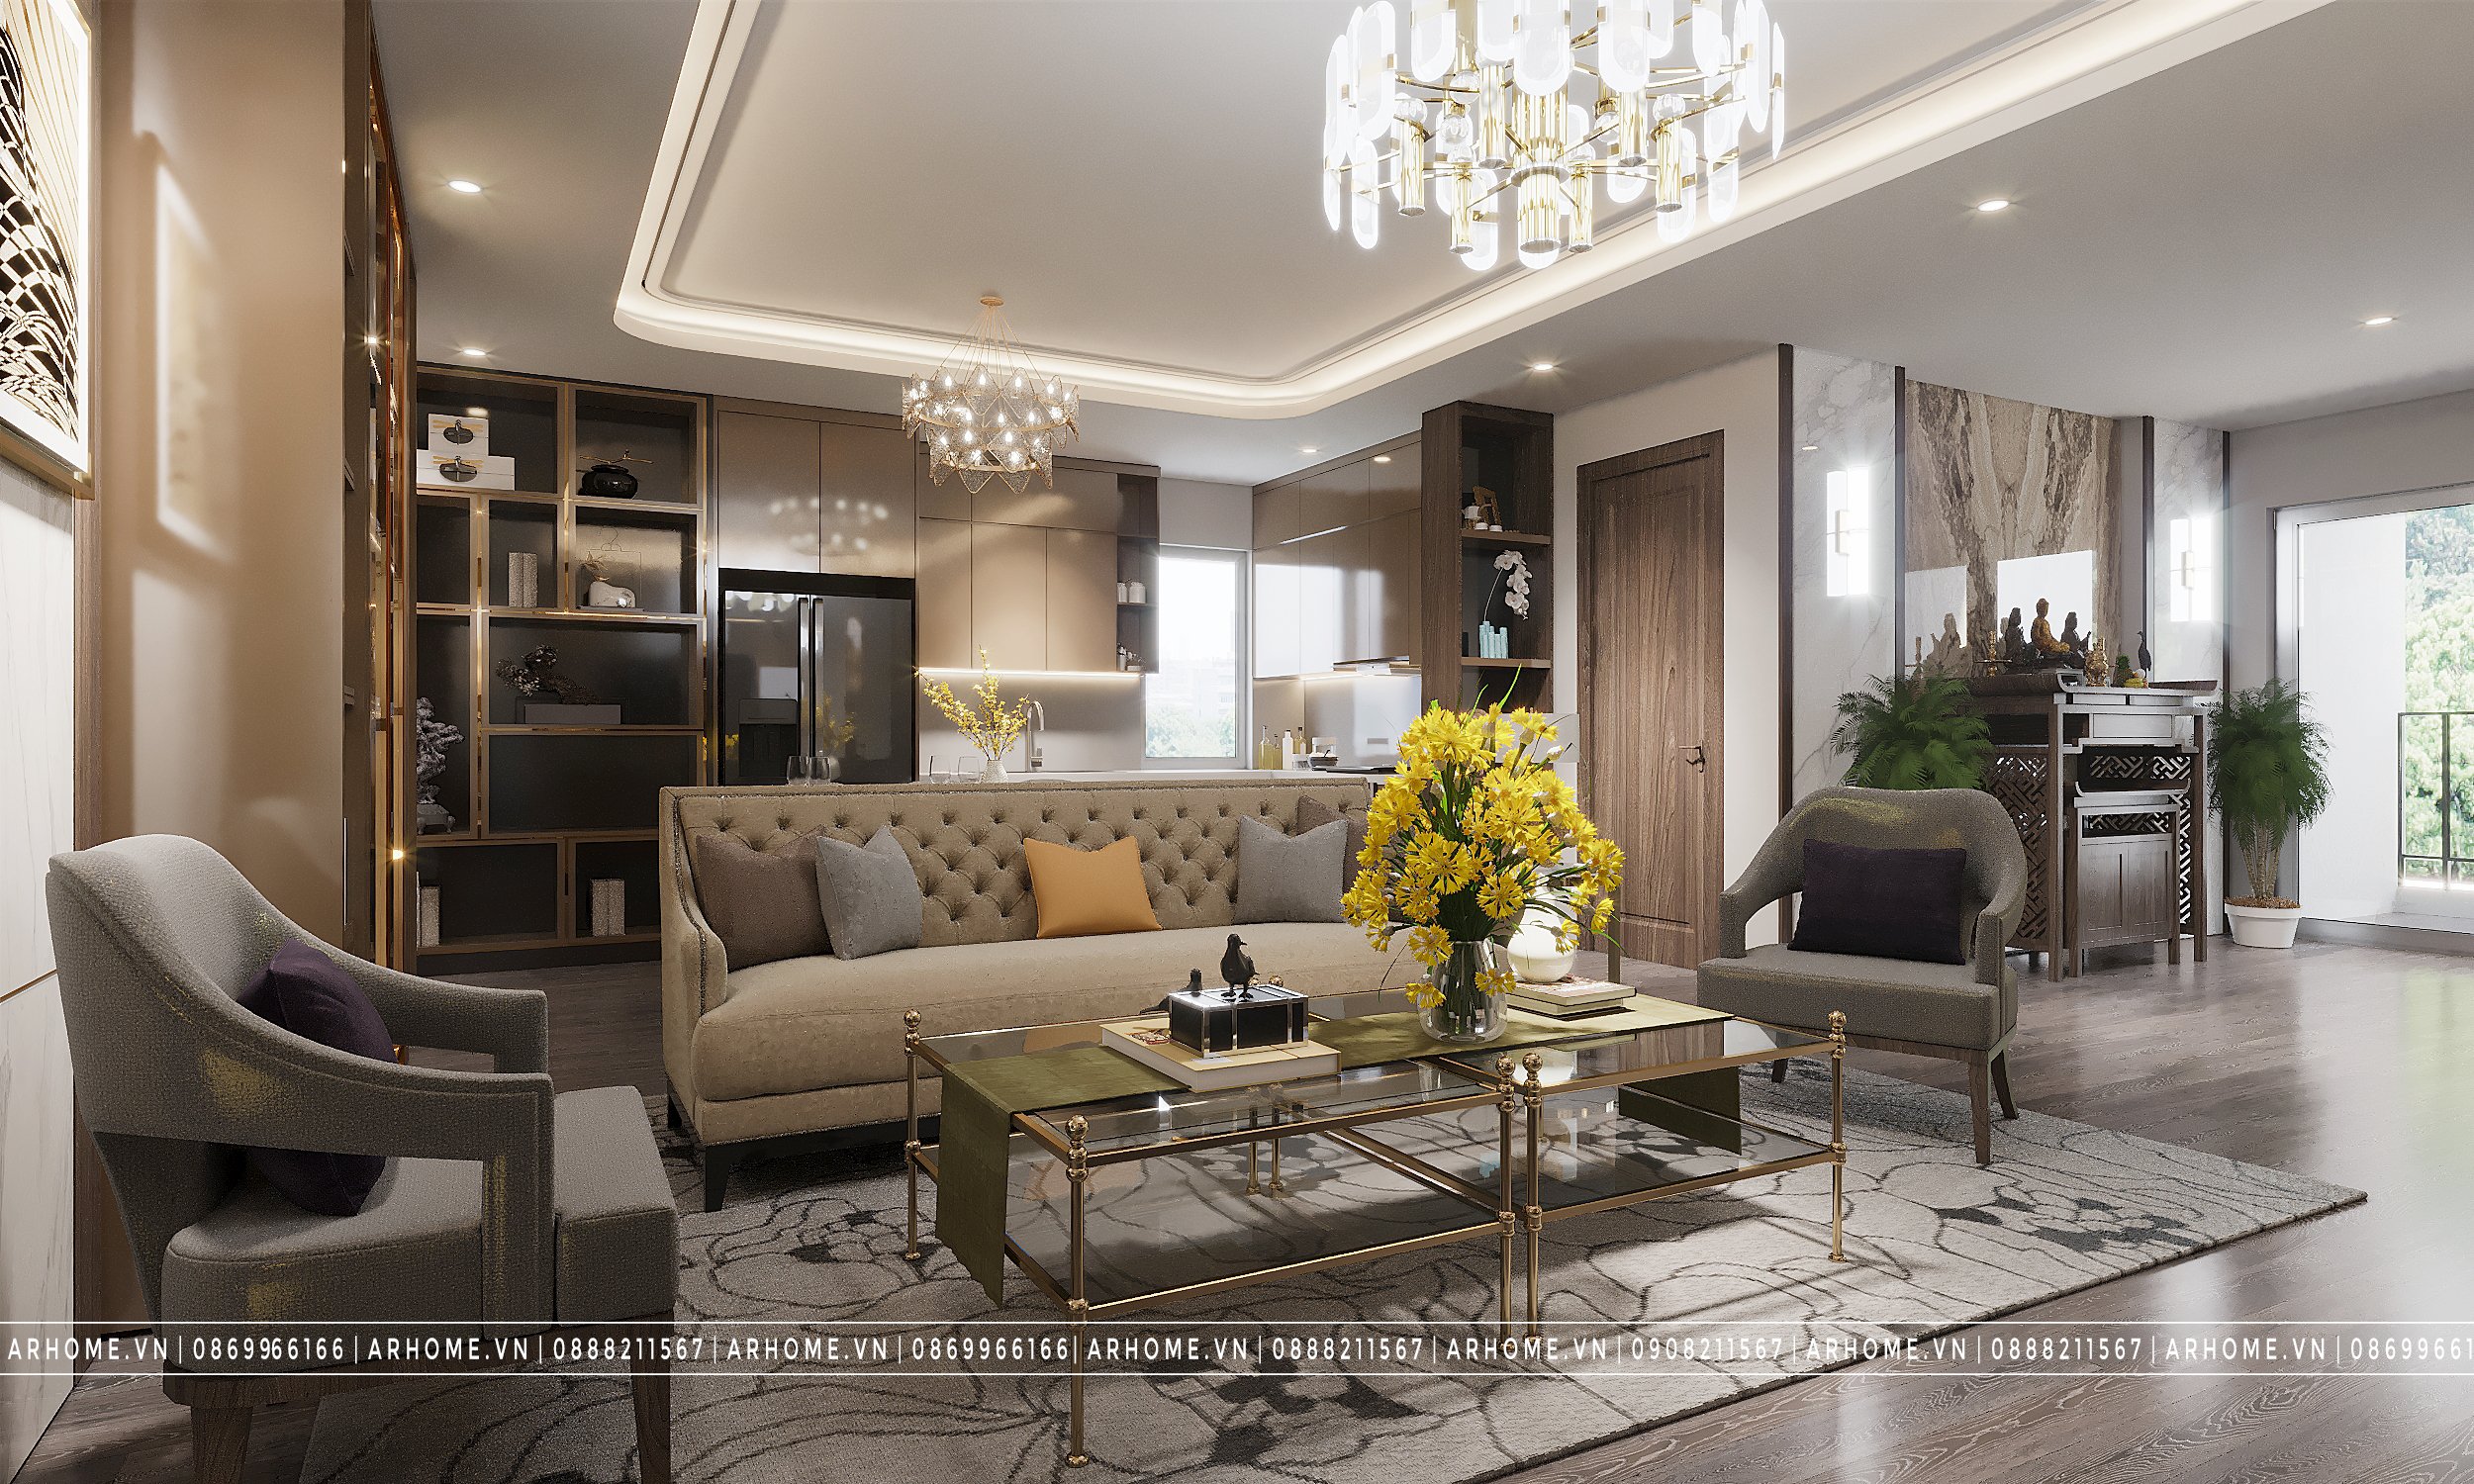 Thiết kế nội thất Chung Cư tại Hà Nội Thiết kế nội thất căn hộ chung cư N05 Hoàng Đạo Thuý phong cách Hiện Đại 1610507685 1